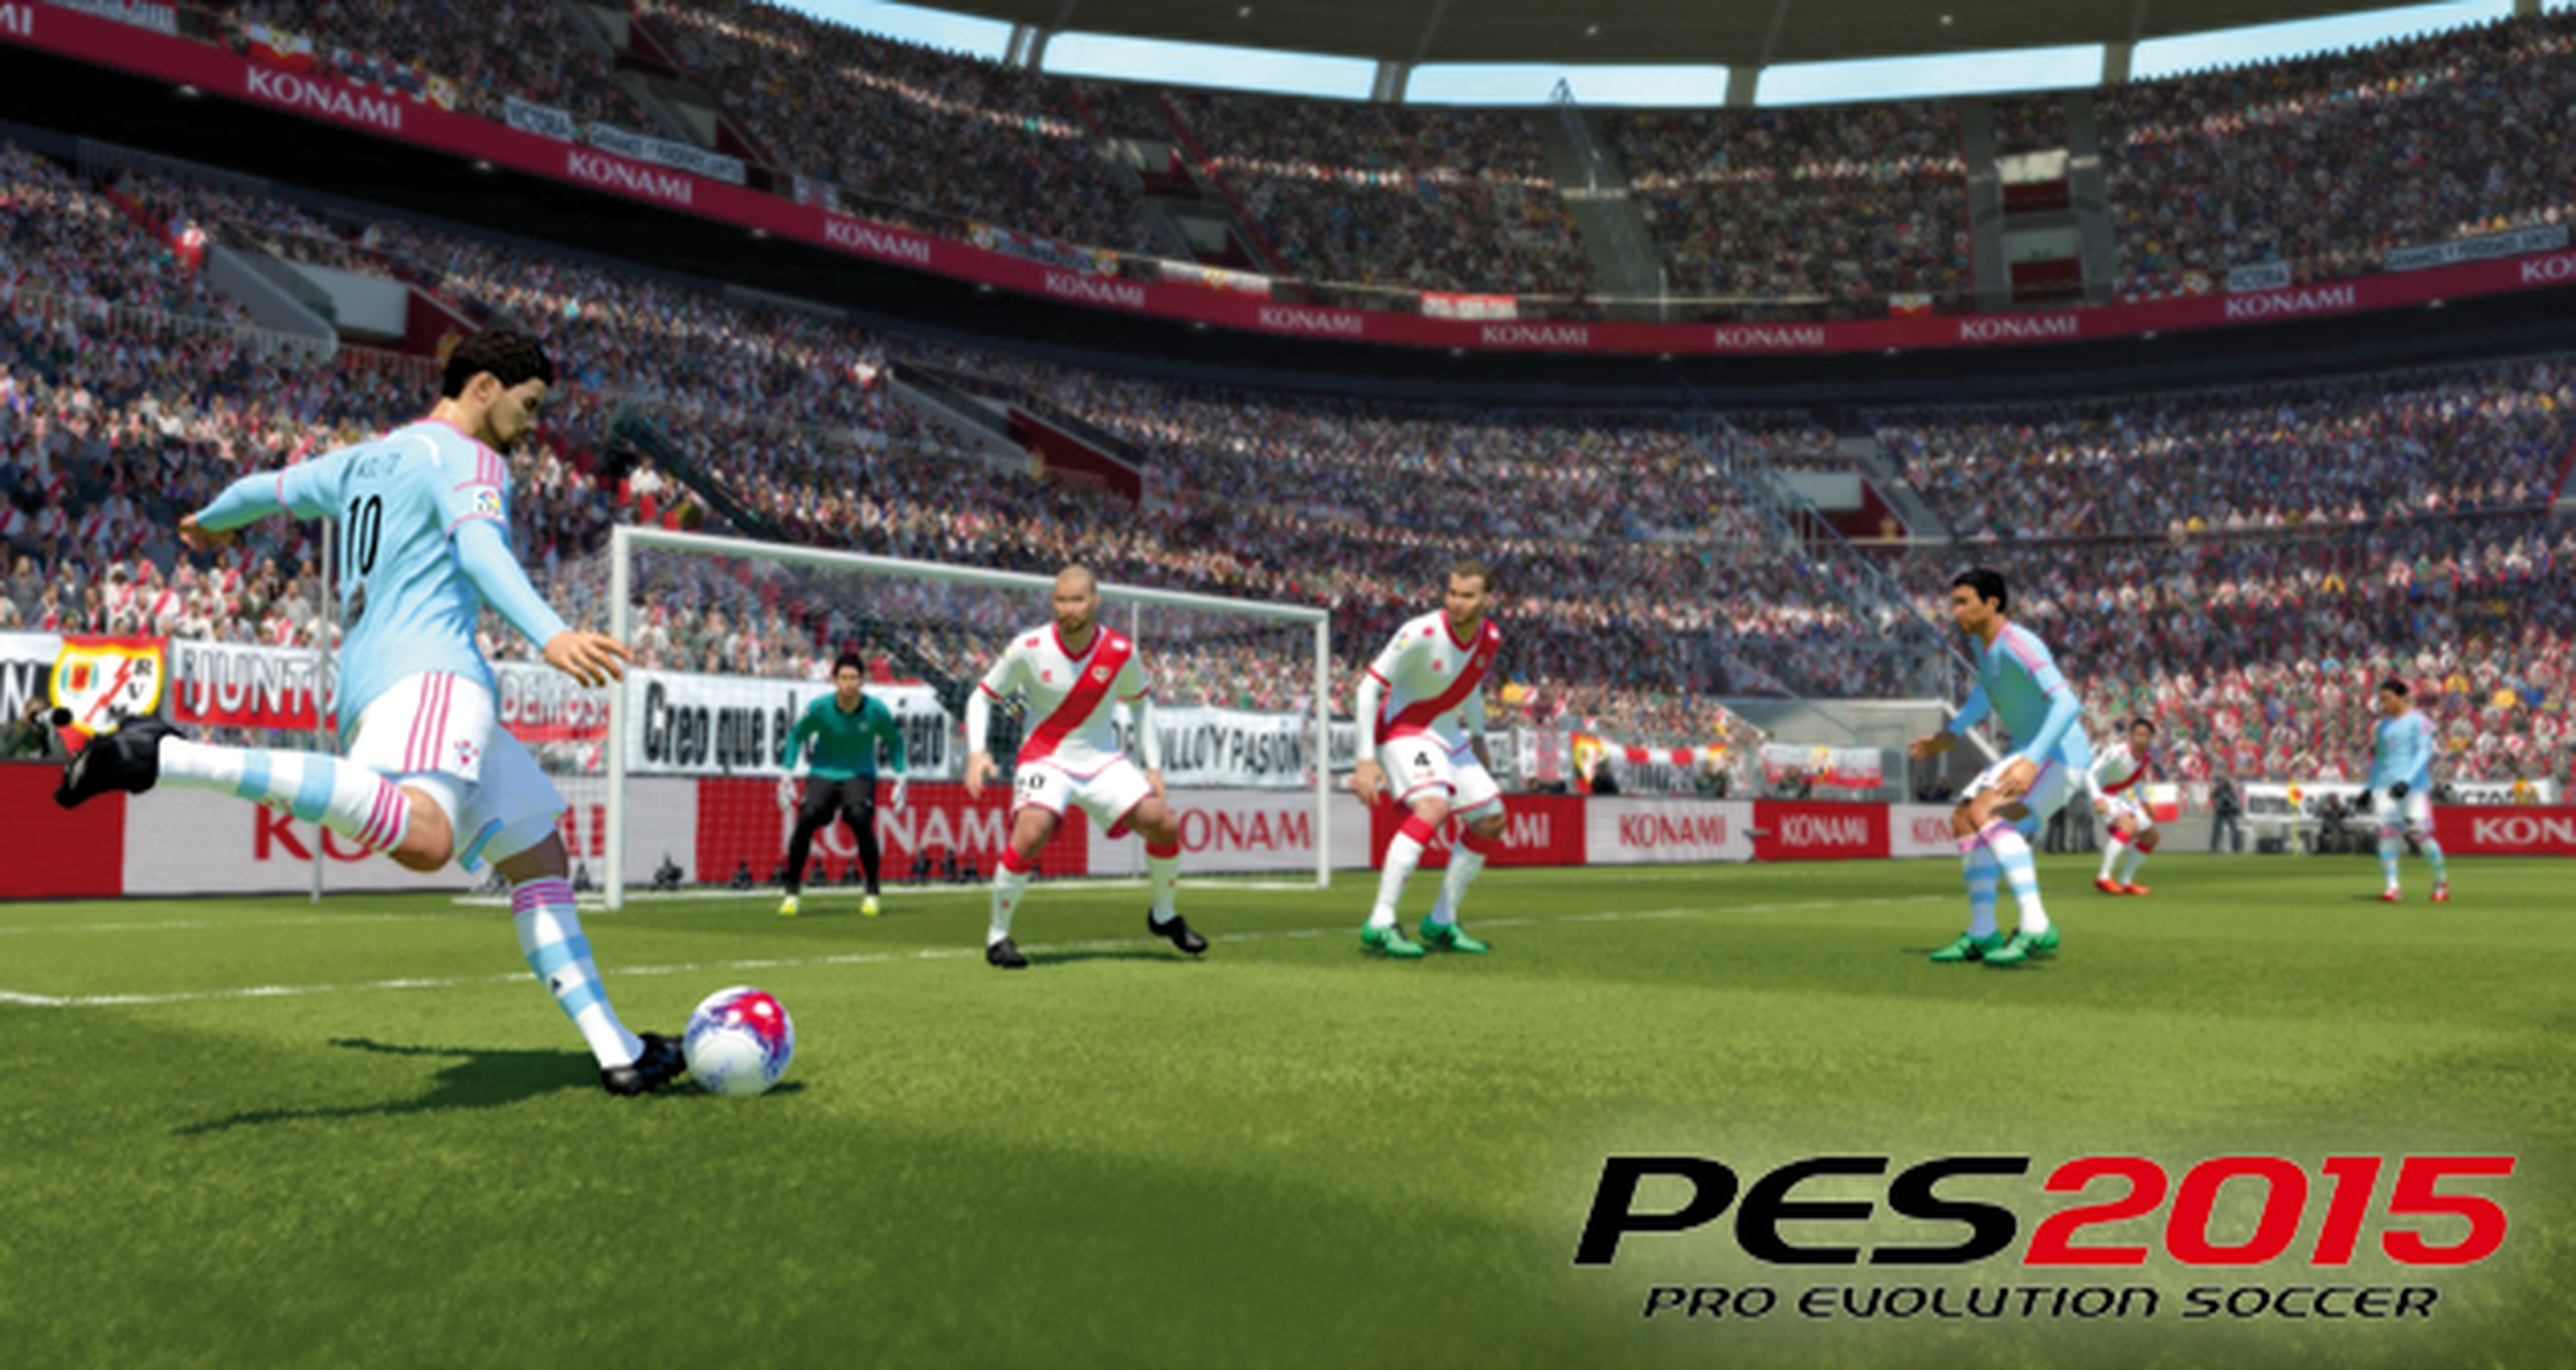 Avance de PES 2015 en PS4, Xbox One y PC